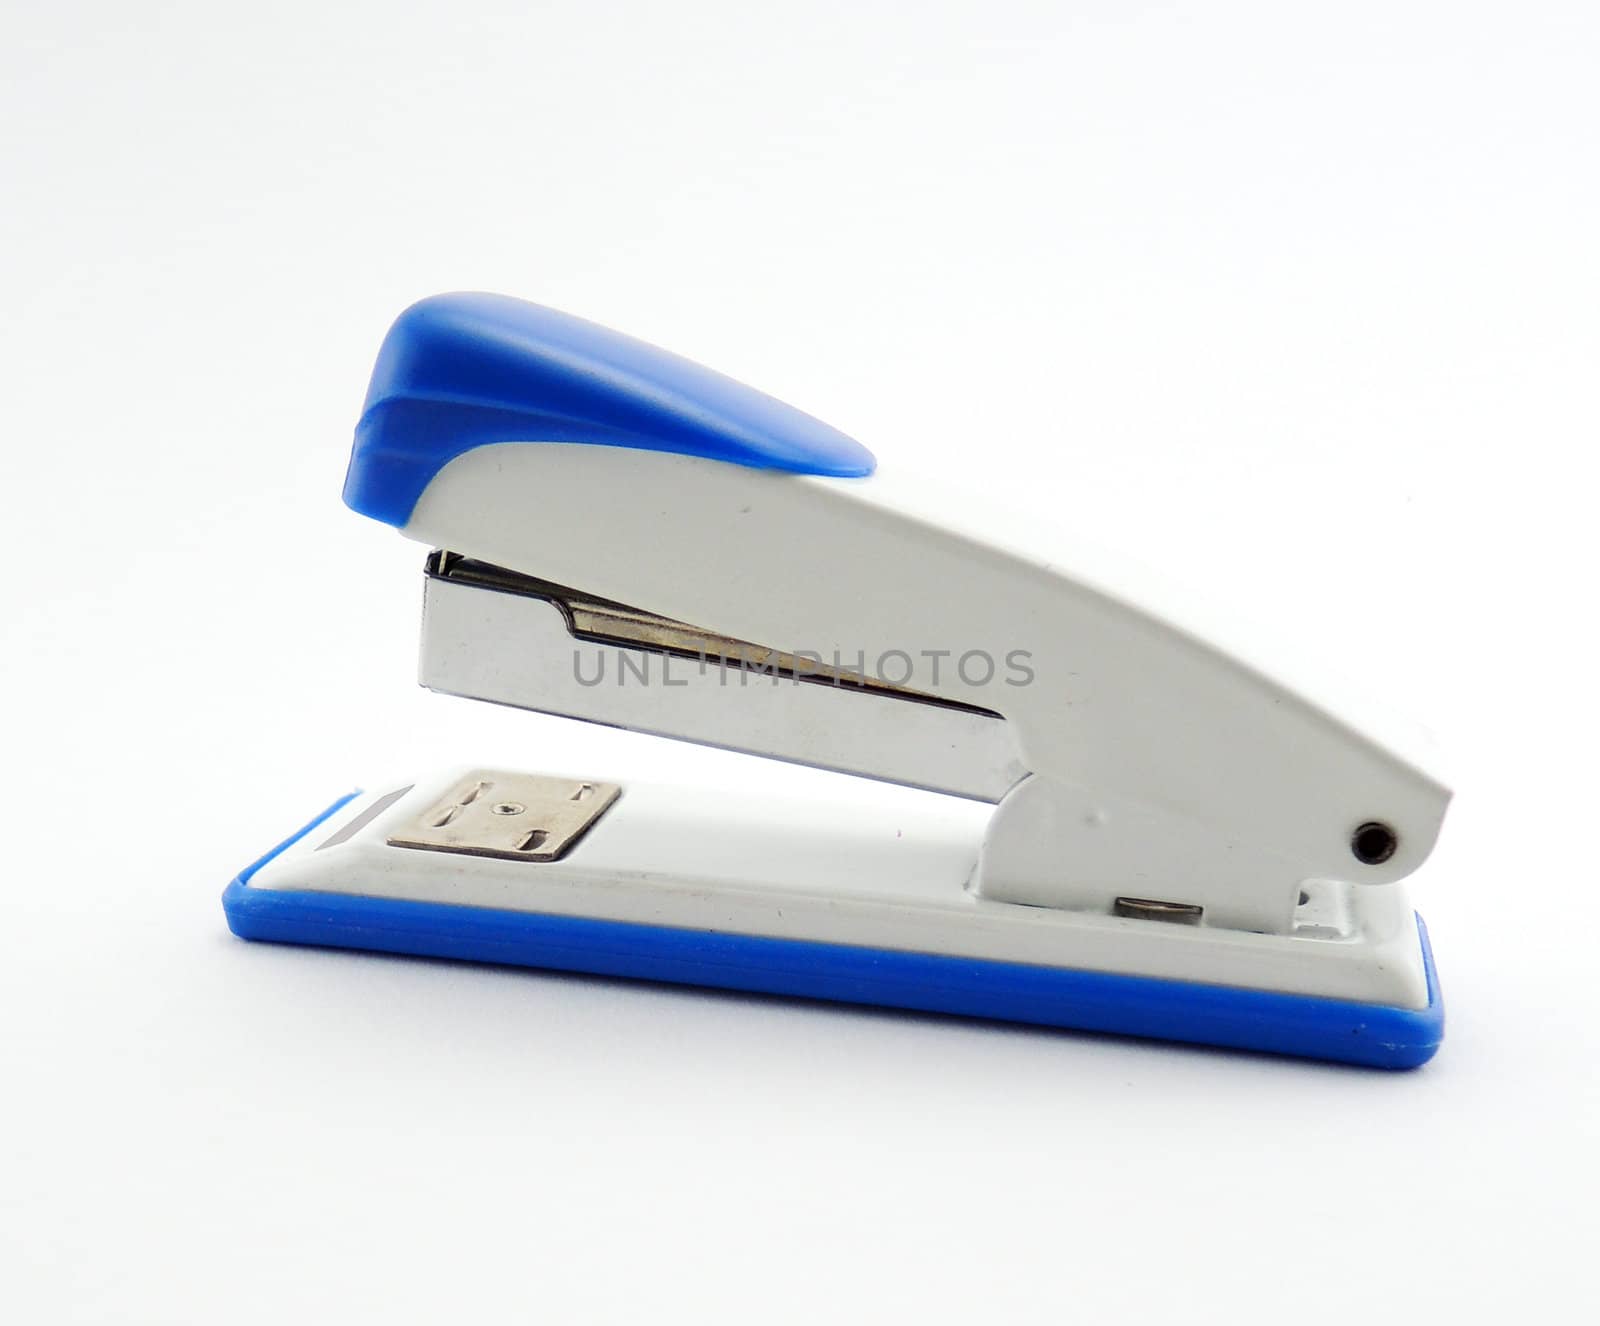 Blue stapler on white background by MalyDesigner